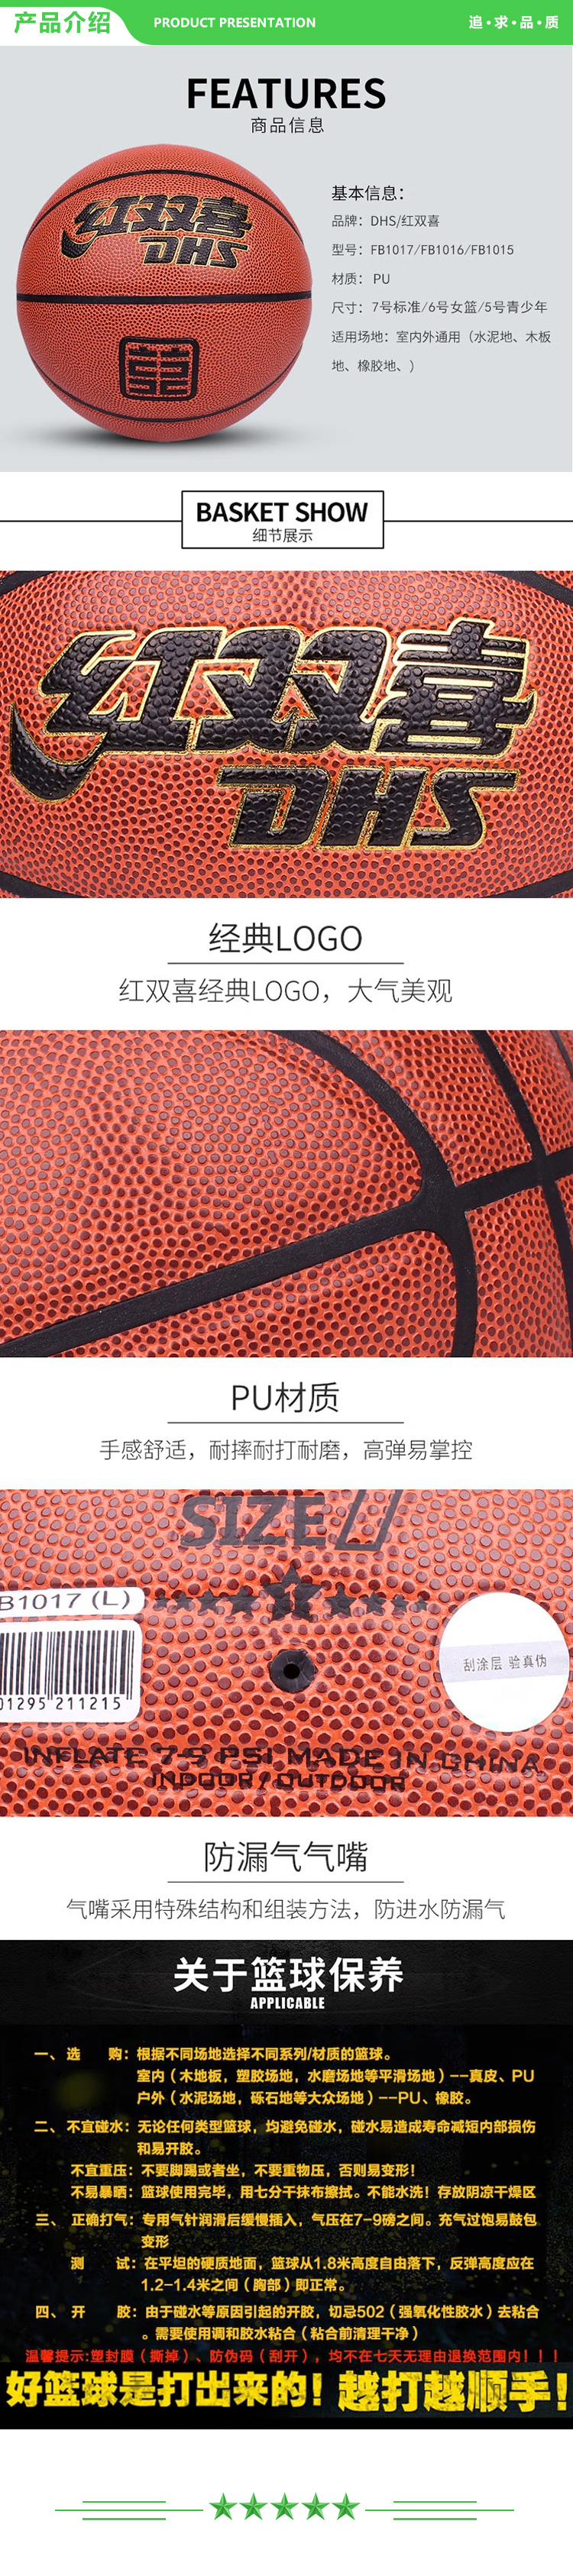 红双喜 DHS FB1016 六号篮球 一星级篮球室内外通用棕色PU球 一星级PU篮球  (2).jpg